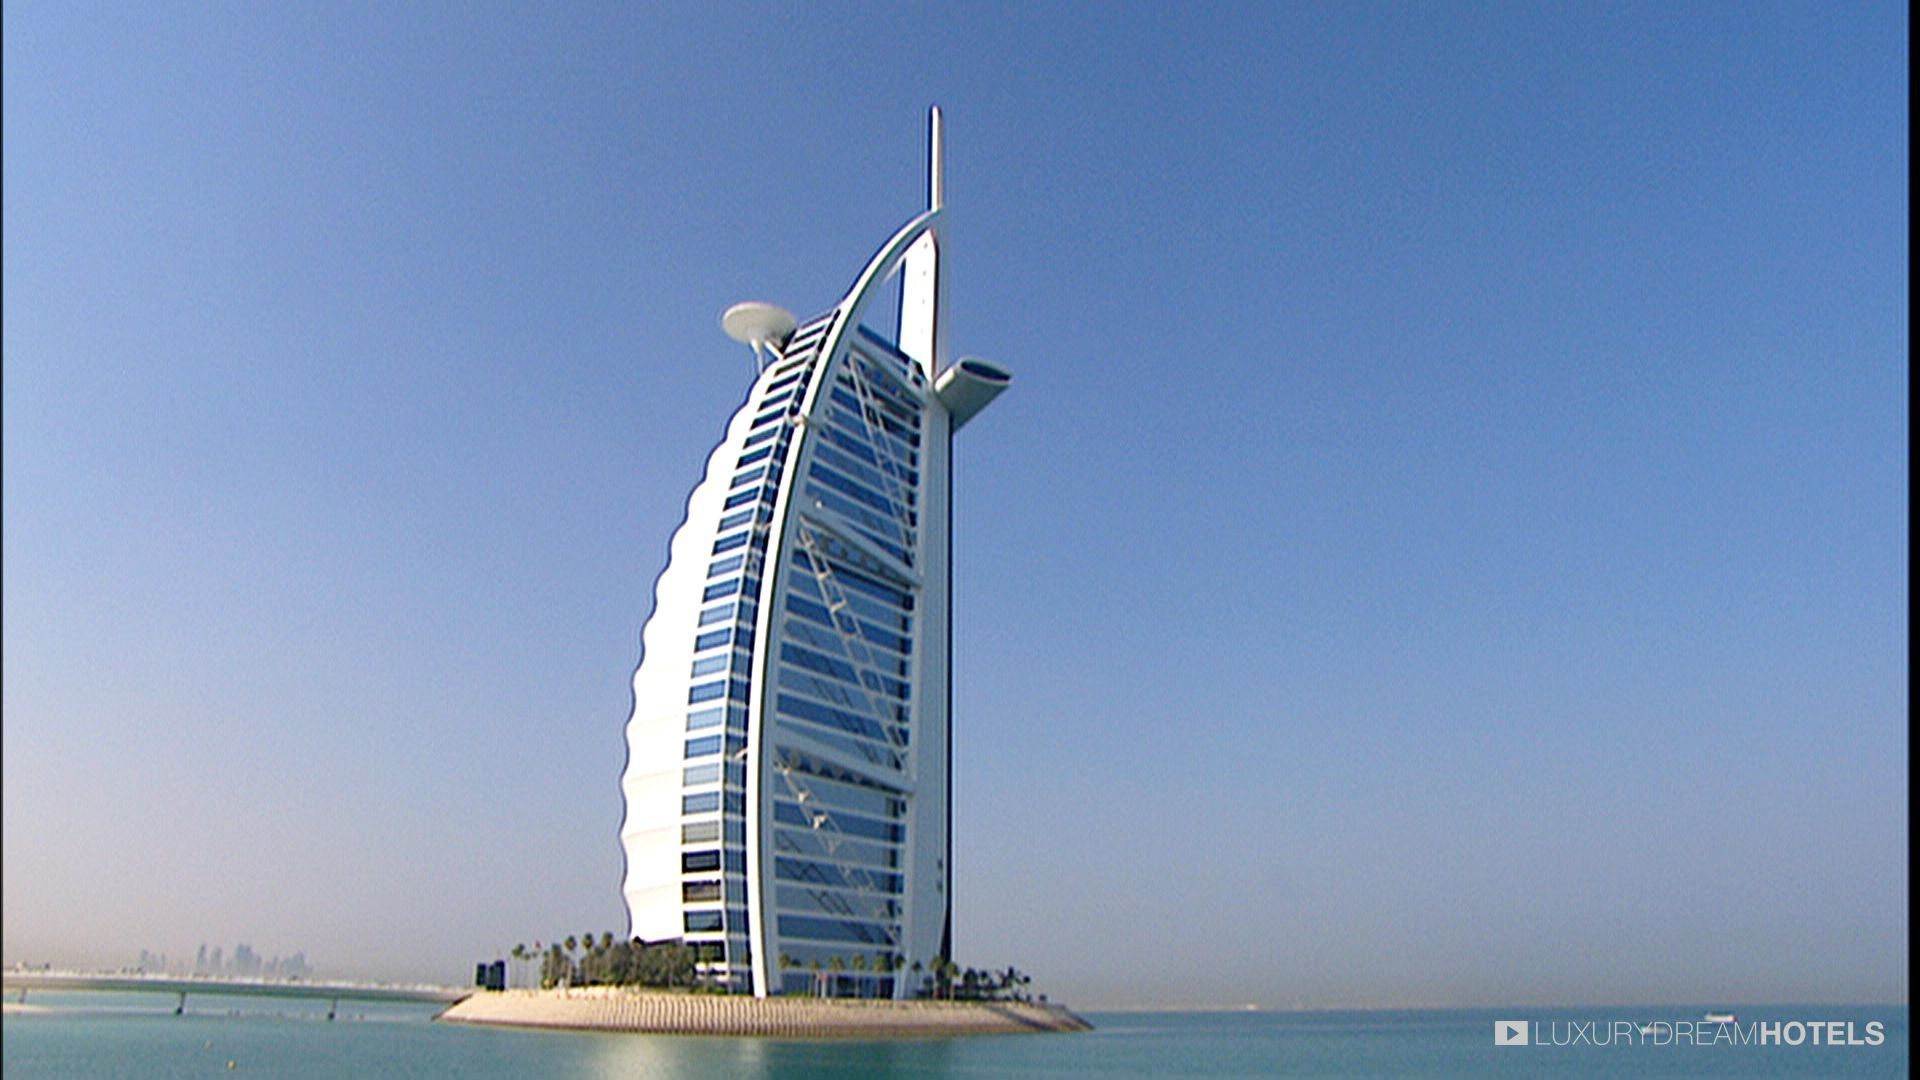 Luxury hotel, Burj Al Arab, Dubai, United Arab Emirates - Luxury ...